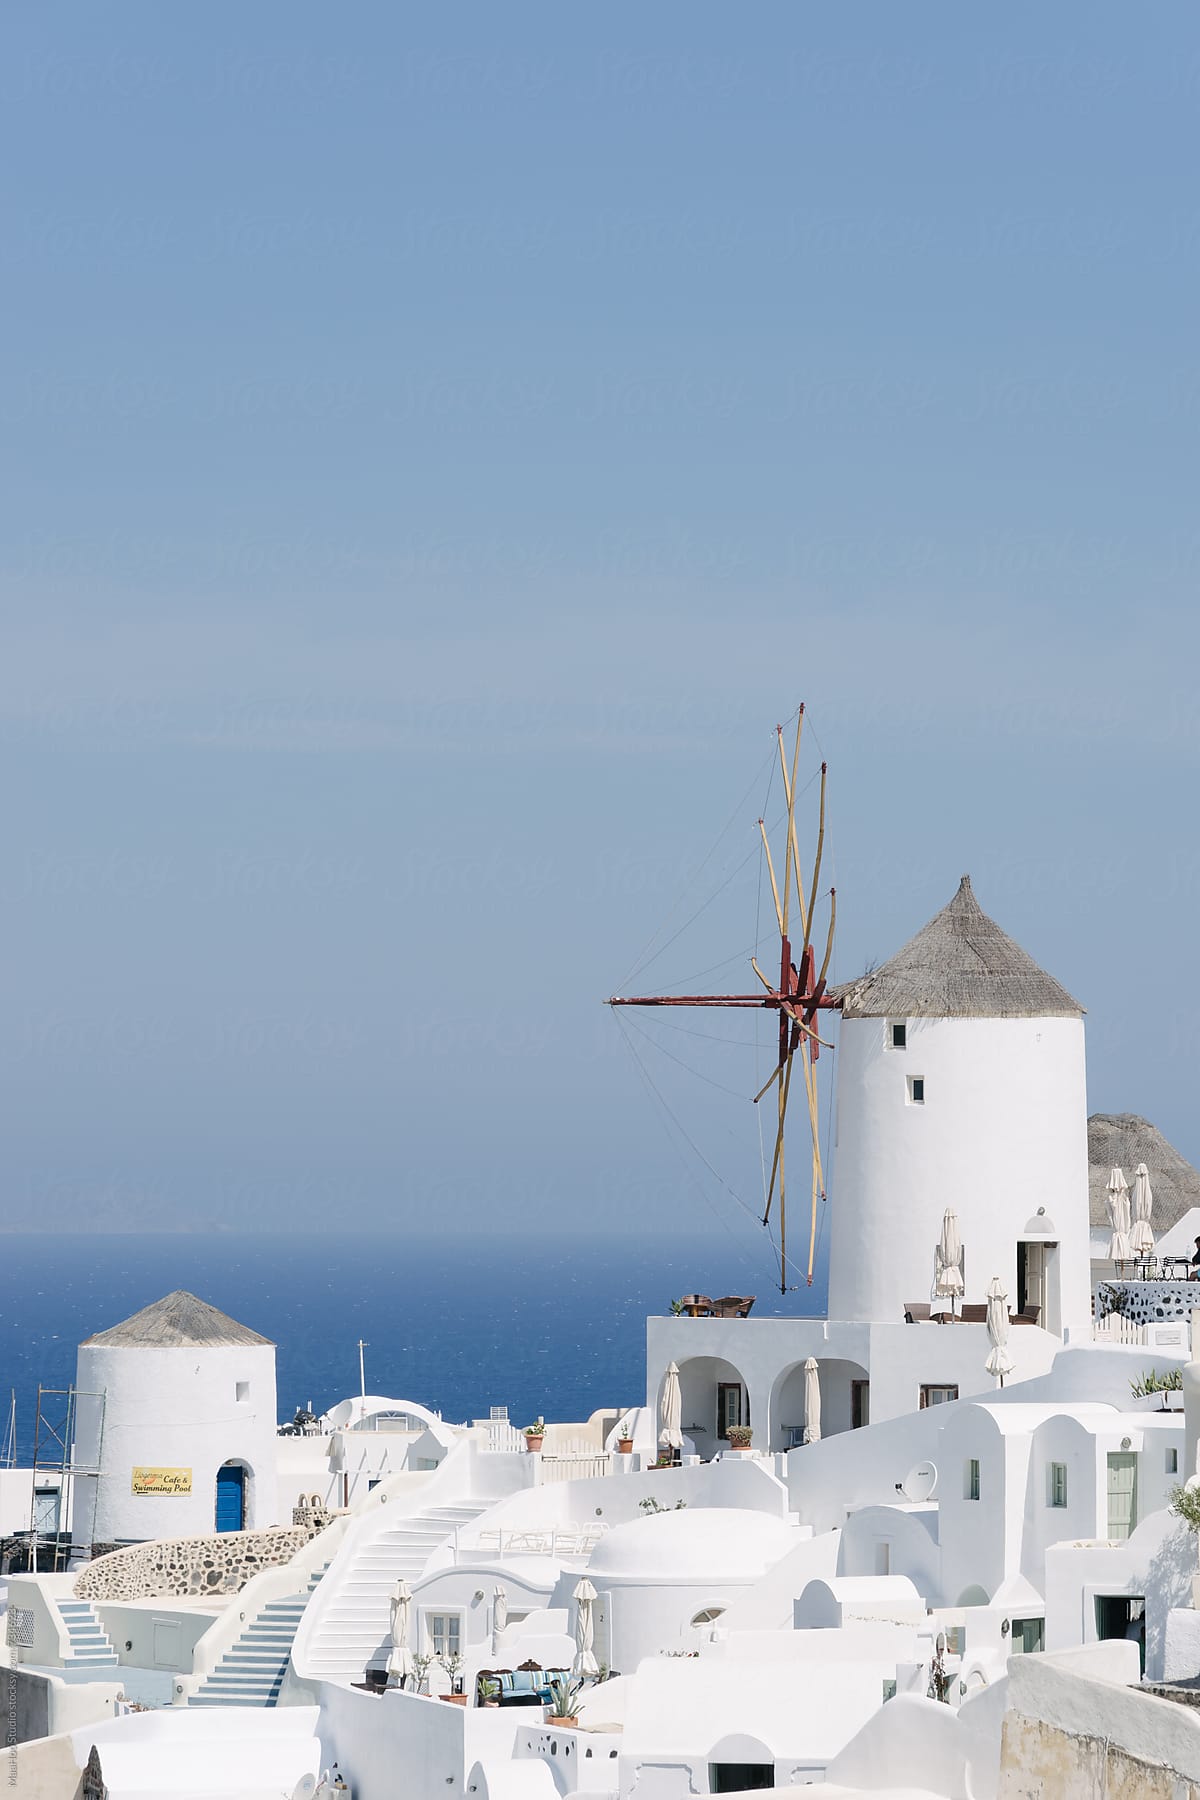 Windmill on the Greek island